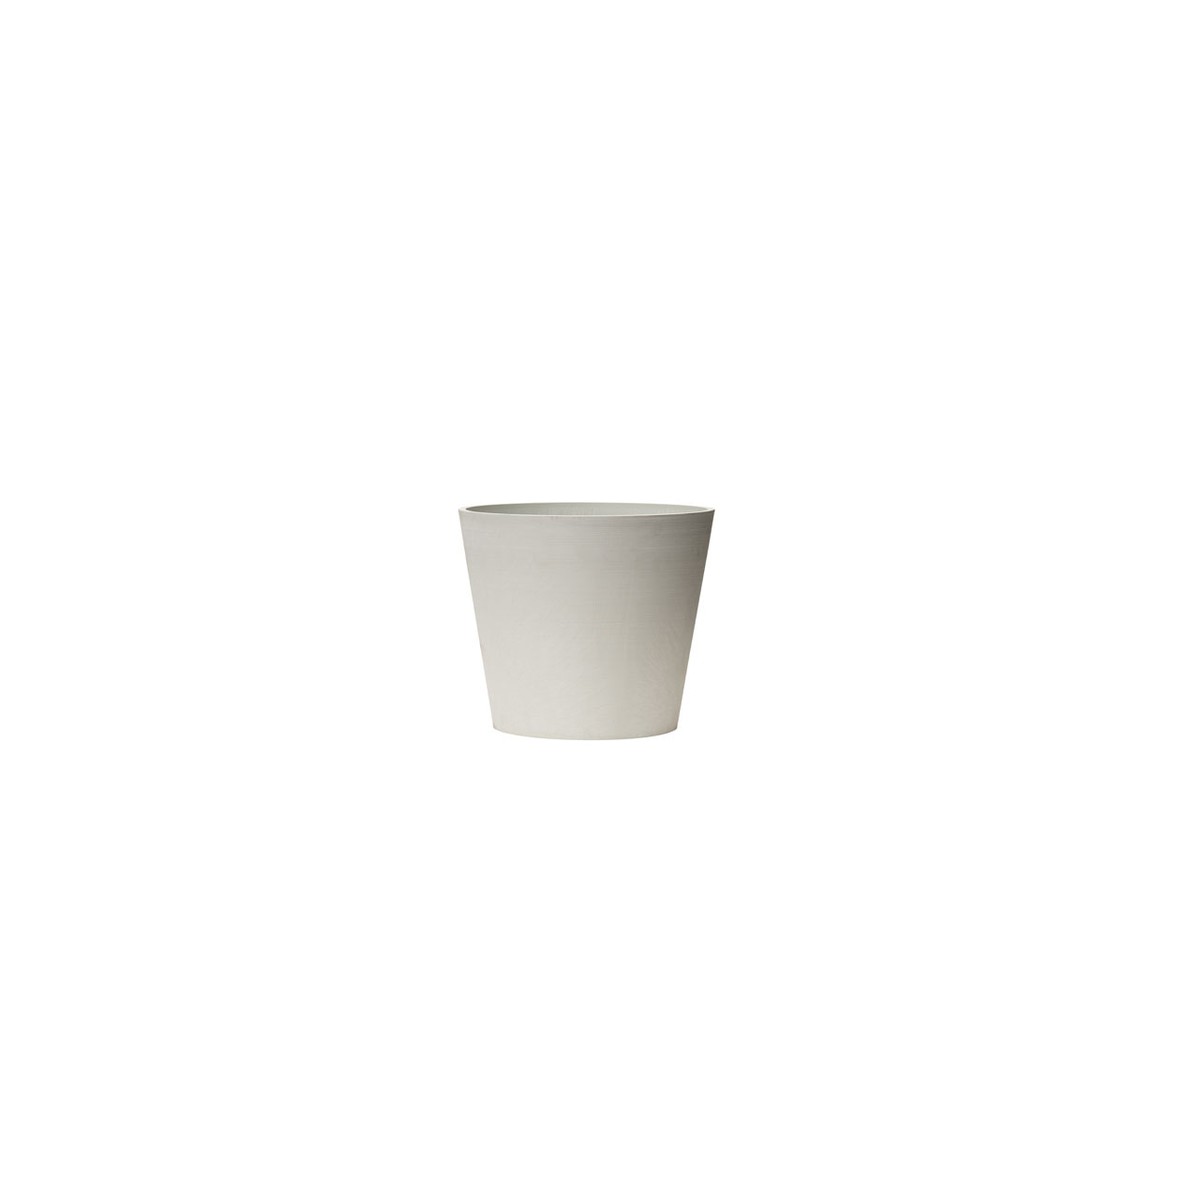  NOVA VITA Pot à cône tronqué 30 Artplast Blanc albâtre Ø278x247mm 10L